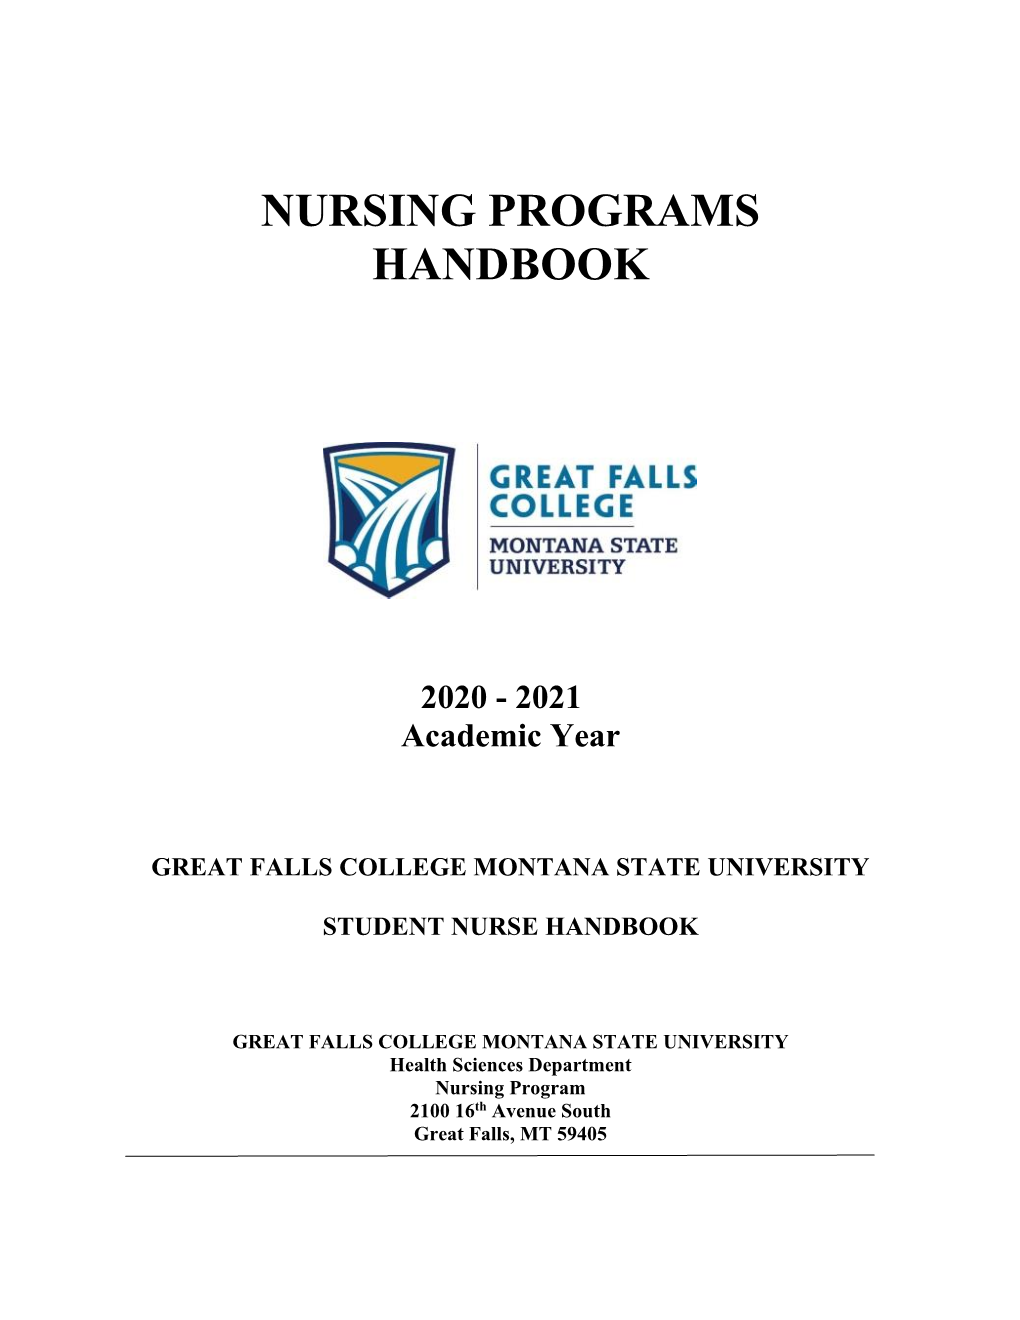 Nursing Programs Handbook